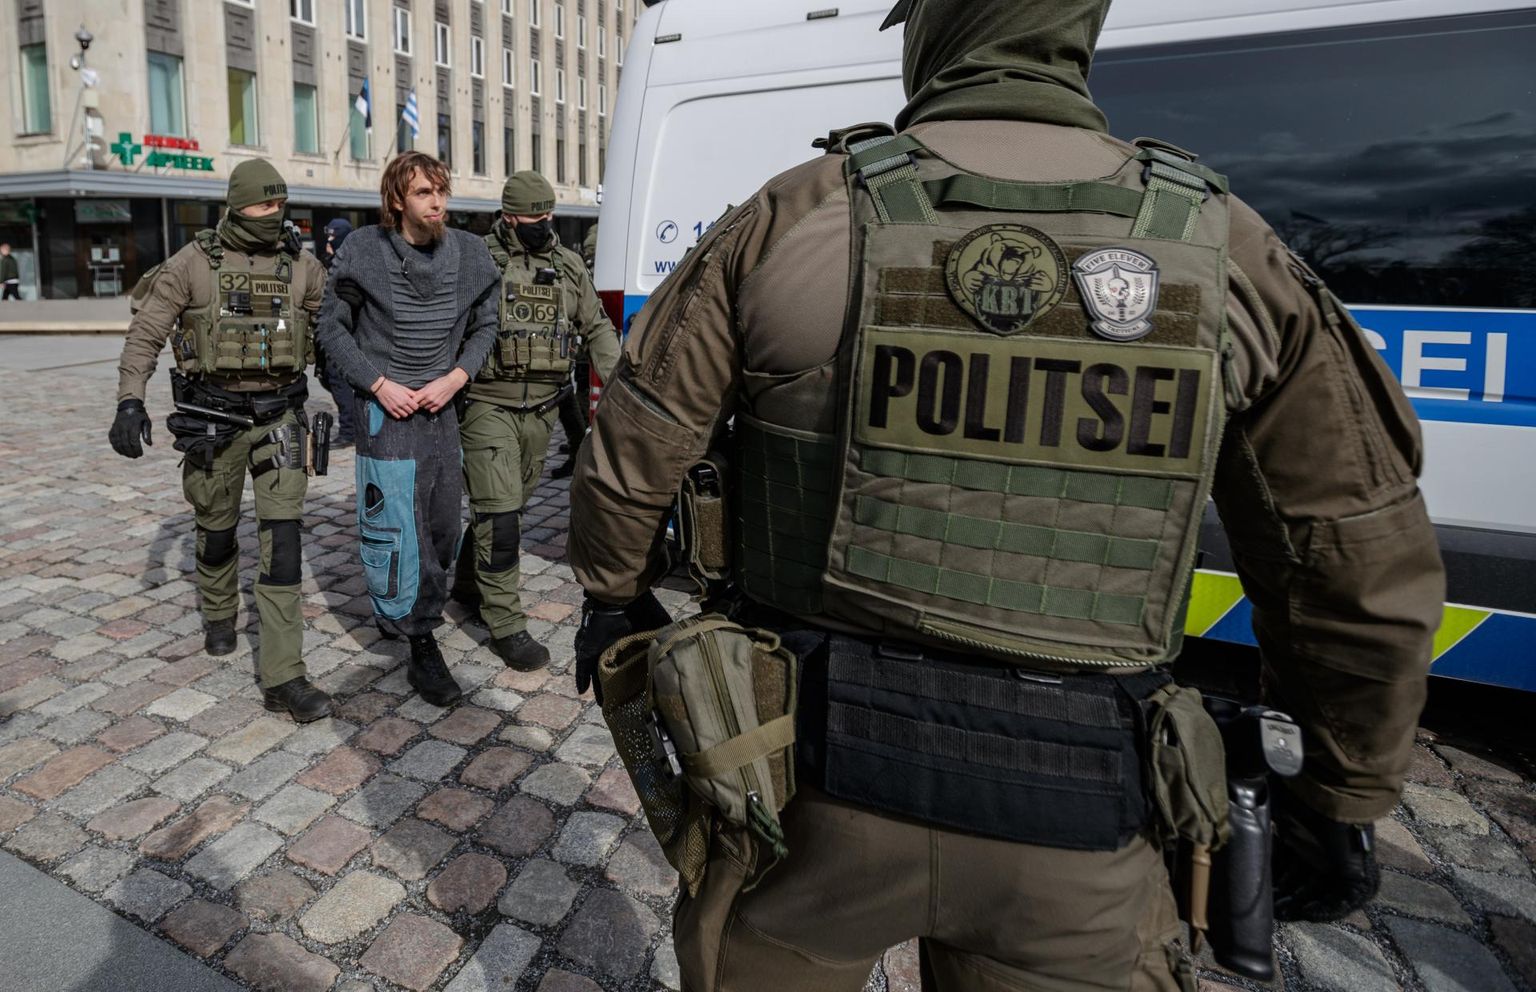 Politsei viib eelmisel pühapäeval Tallinnas Vabaduse väljakult ära pilli mänginud mehe, kes ei allunud politsei korraldustele rahulikult ära minna ning palus seejärel ise korduvalt, et politsei ta minema toimetaks.